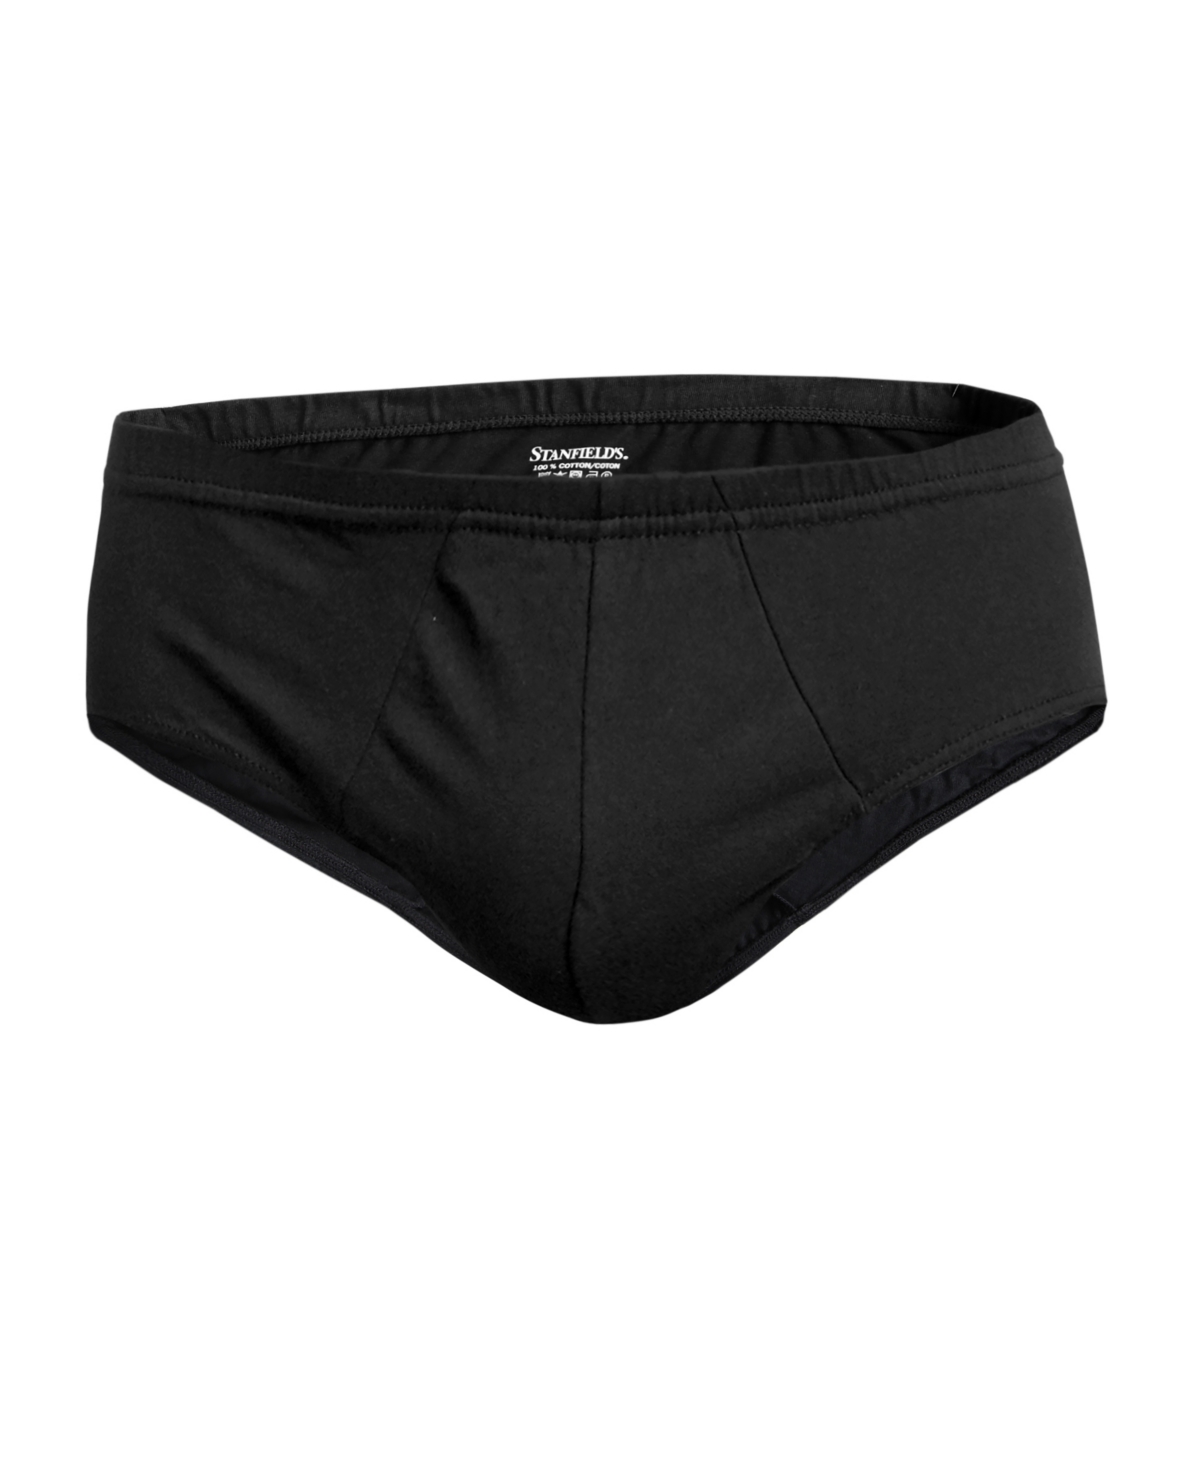 Stanfield's Men's Premium Medi Brief Underwear In Black